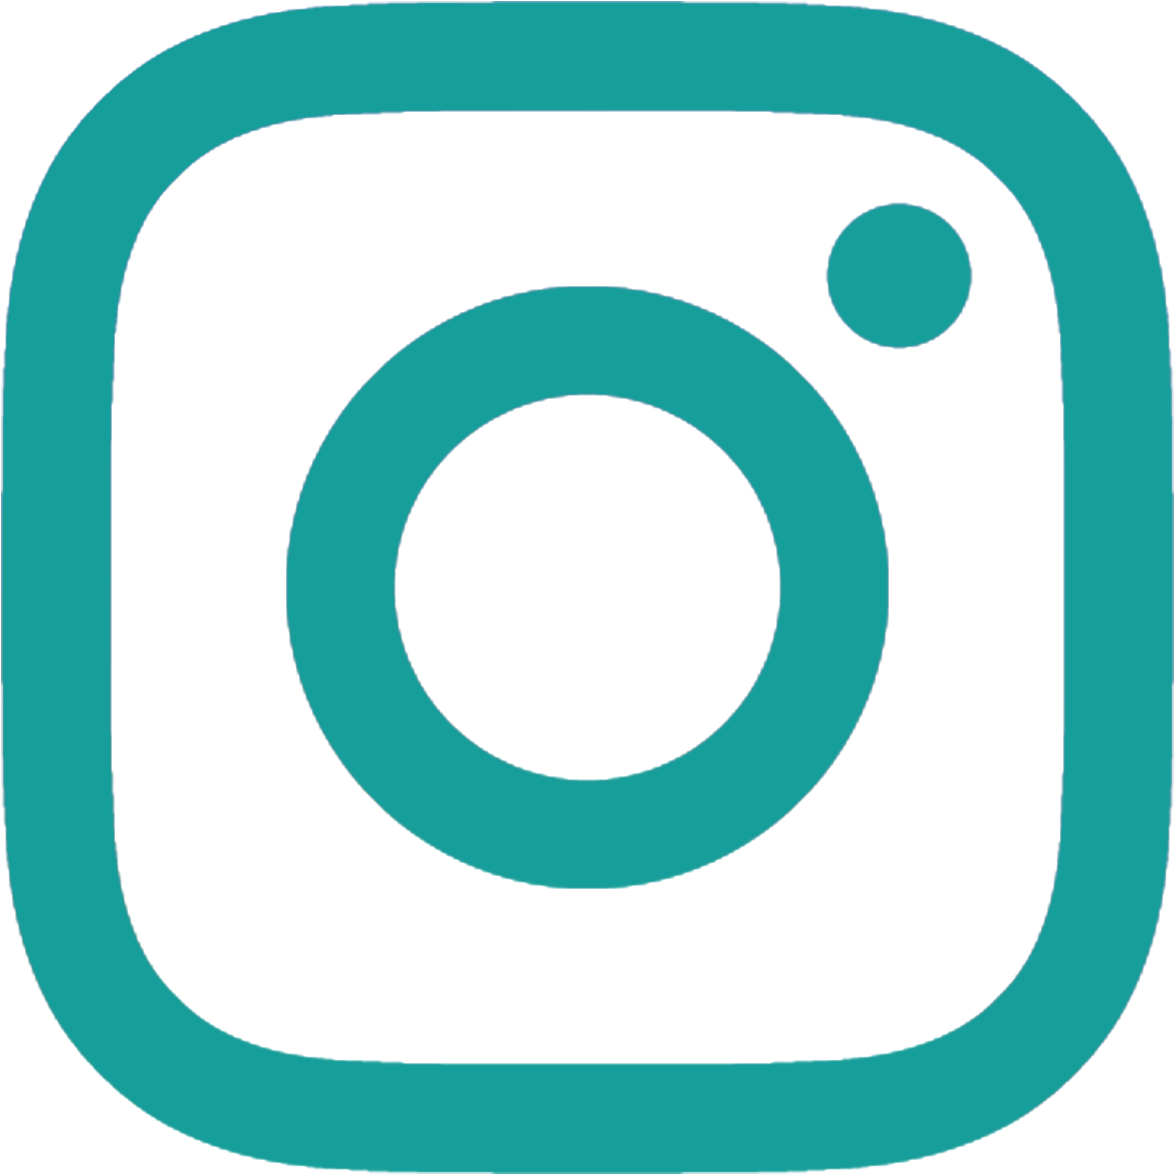 Follow Me - Instagram Icon 2017 (1200x1200)